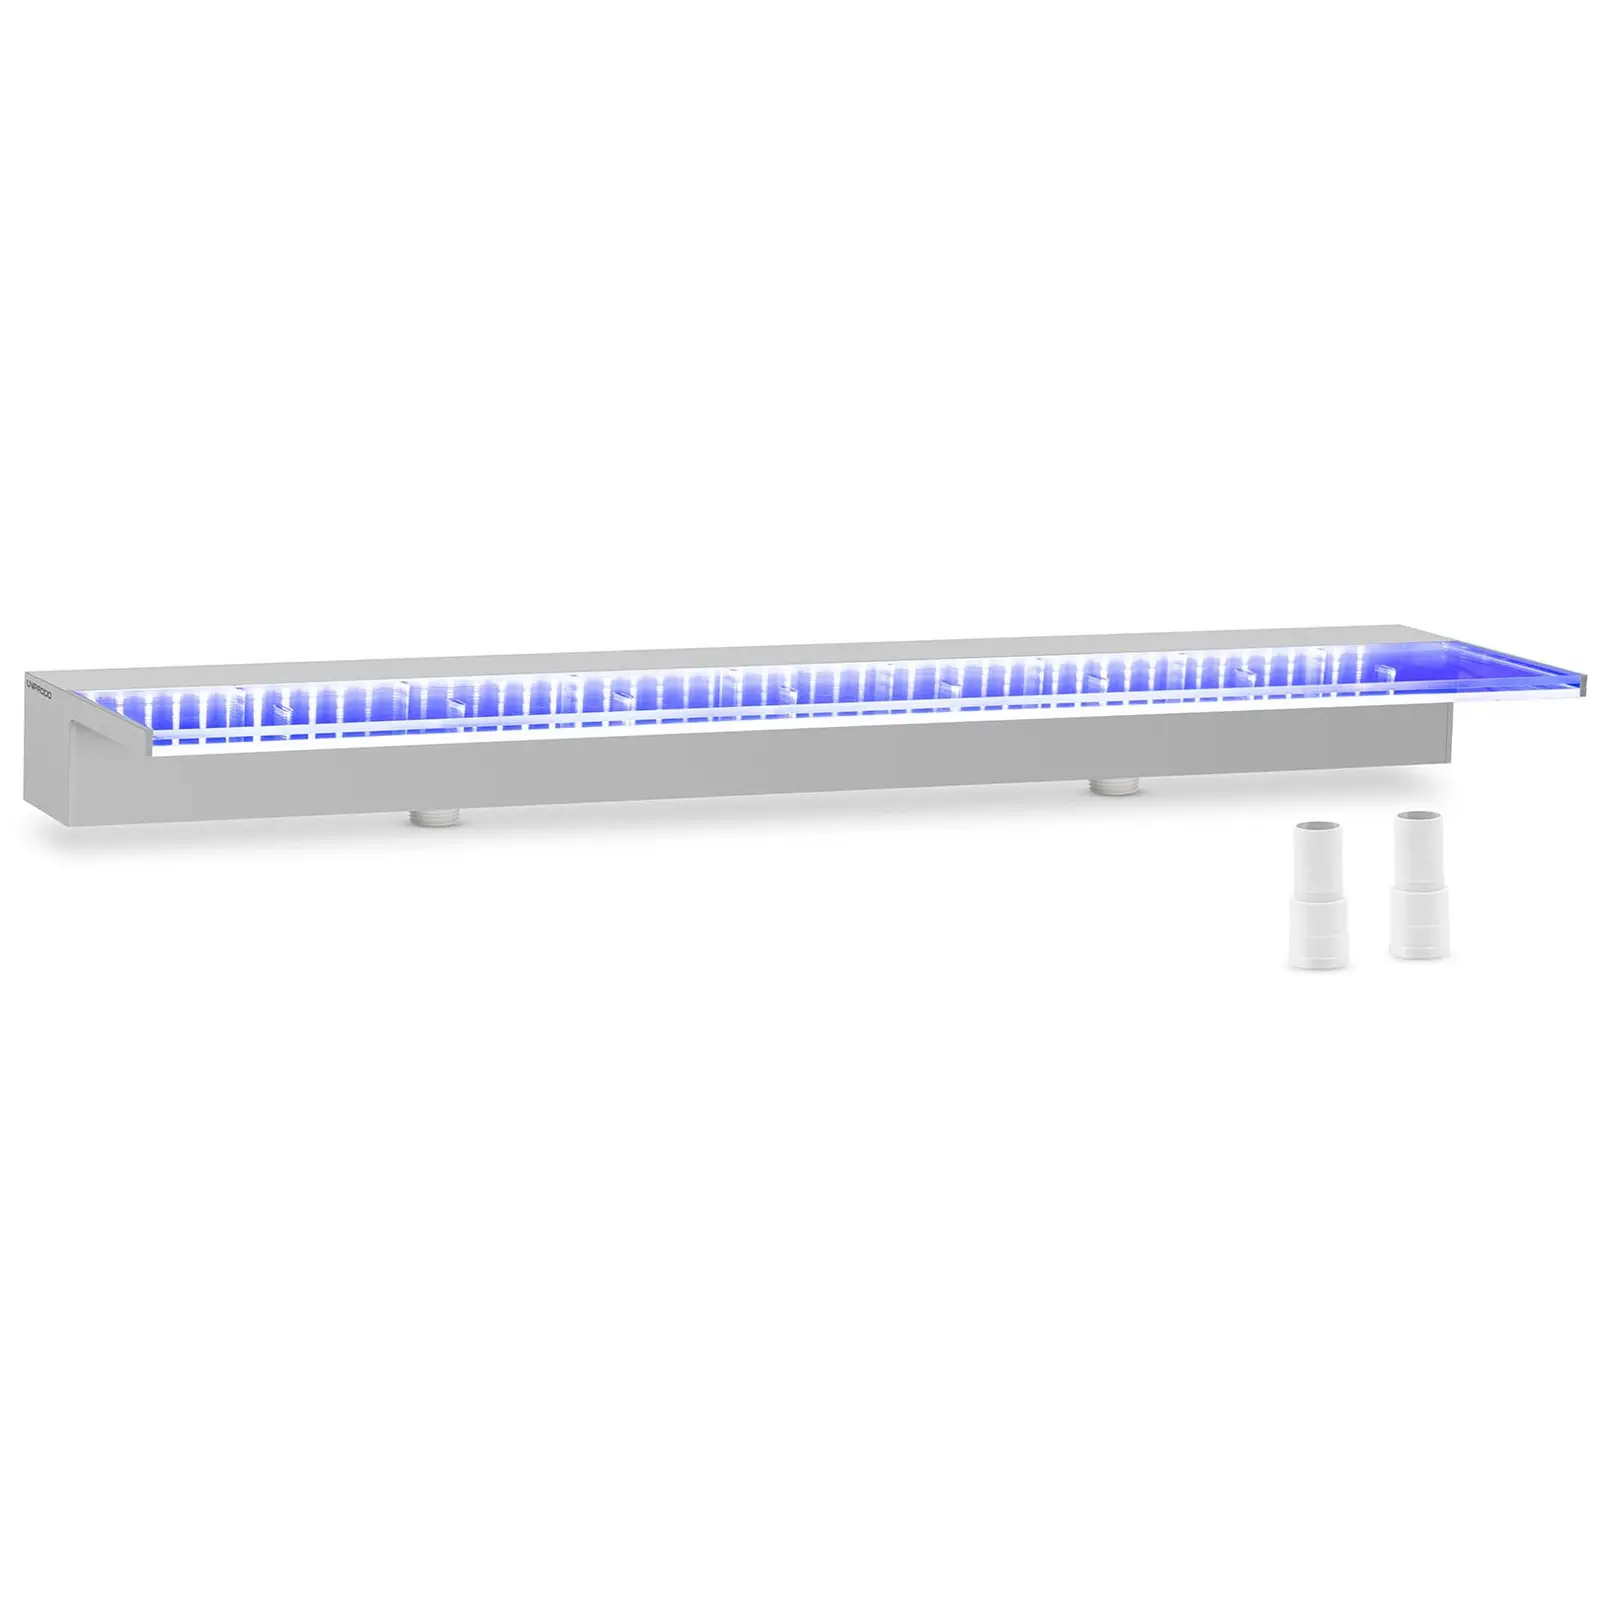 Schwalldusche - 90 cm - LED-Beleuchtung - Blau  - tiefer Wasserauslauf